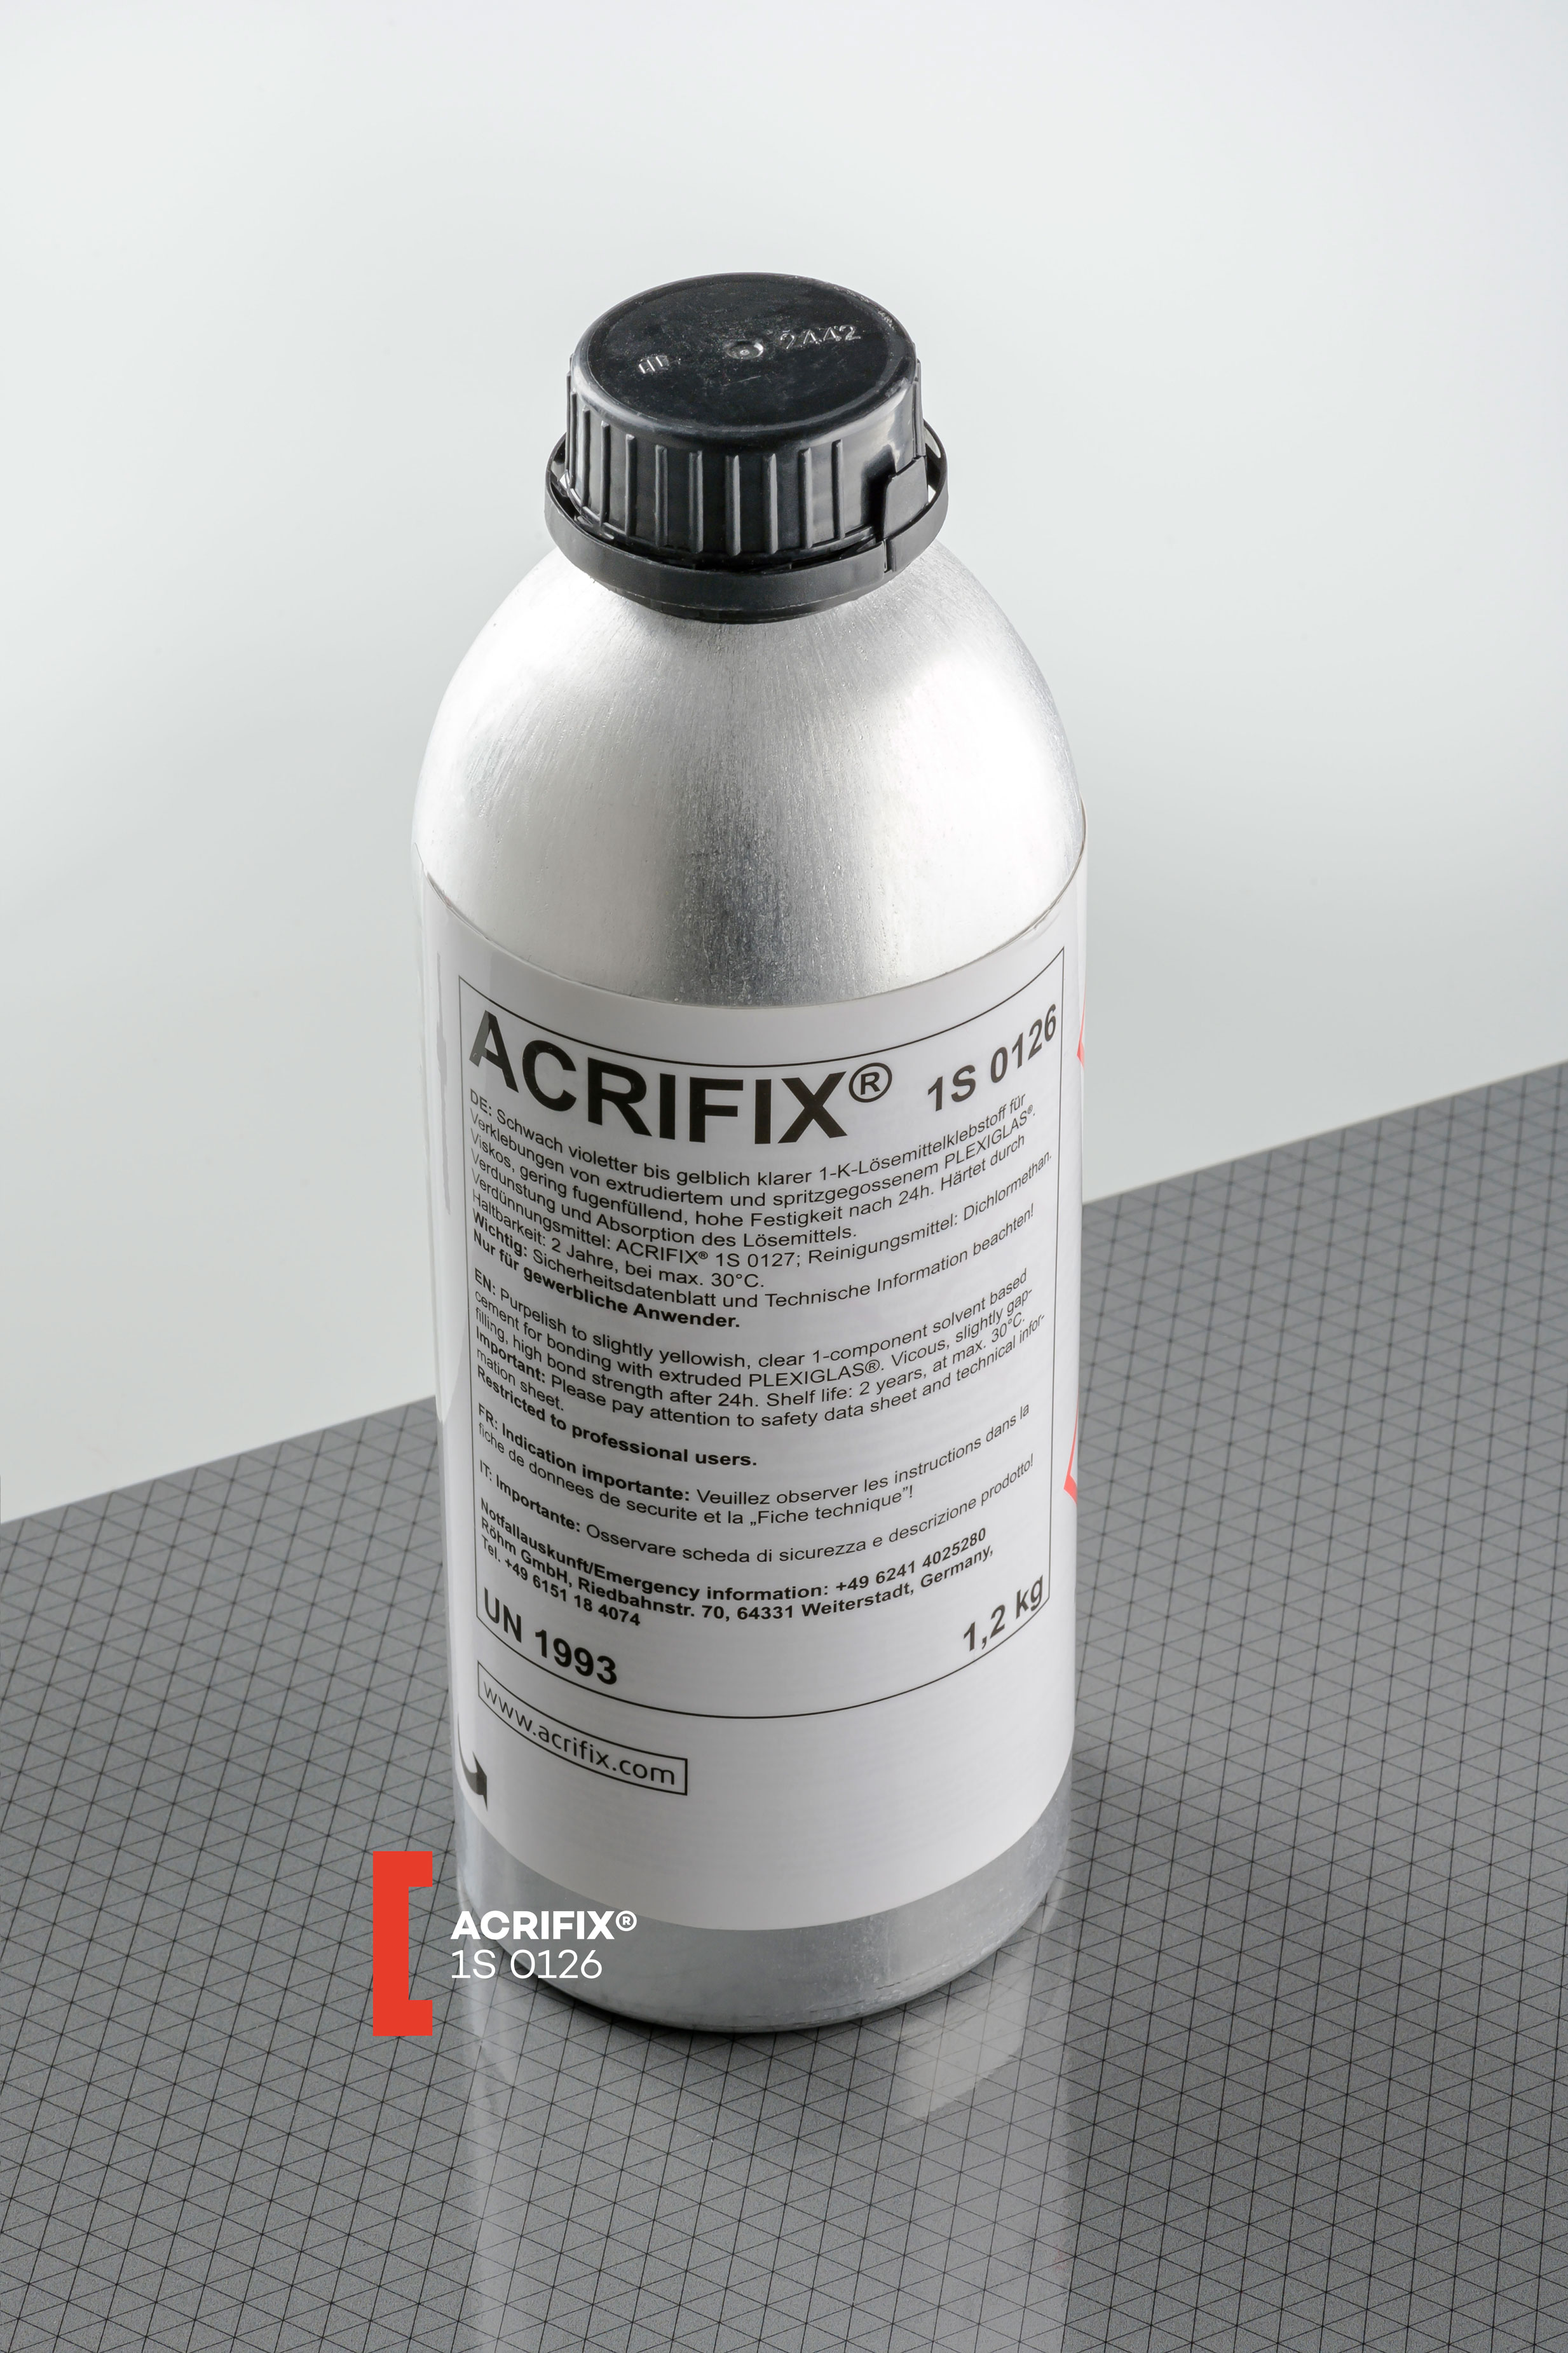 Acrifix 1S 0126 Acrylglas-Kleber PMMA Evonik 1K Lösemittel-Klebstoff Plexikleber 